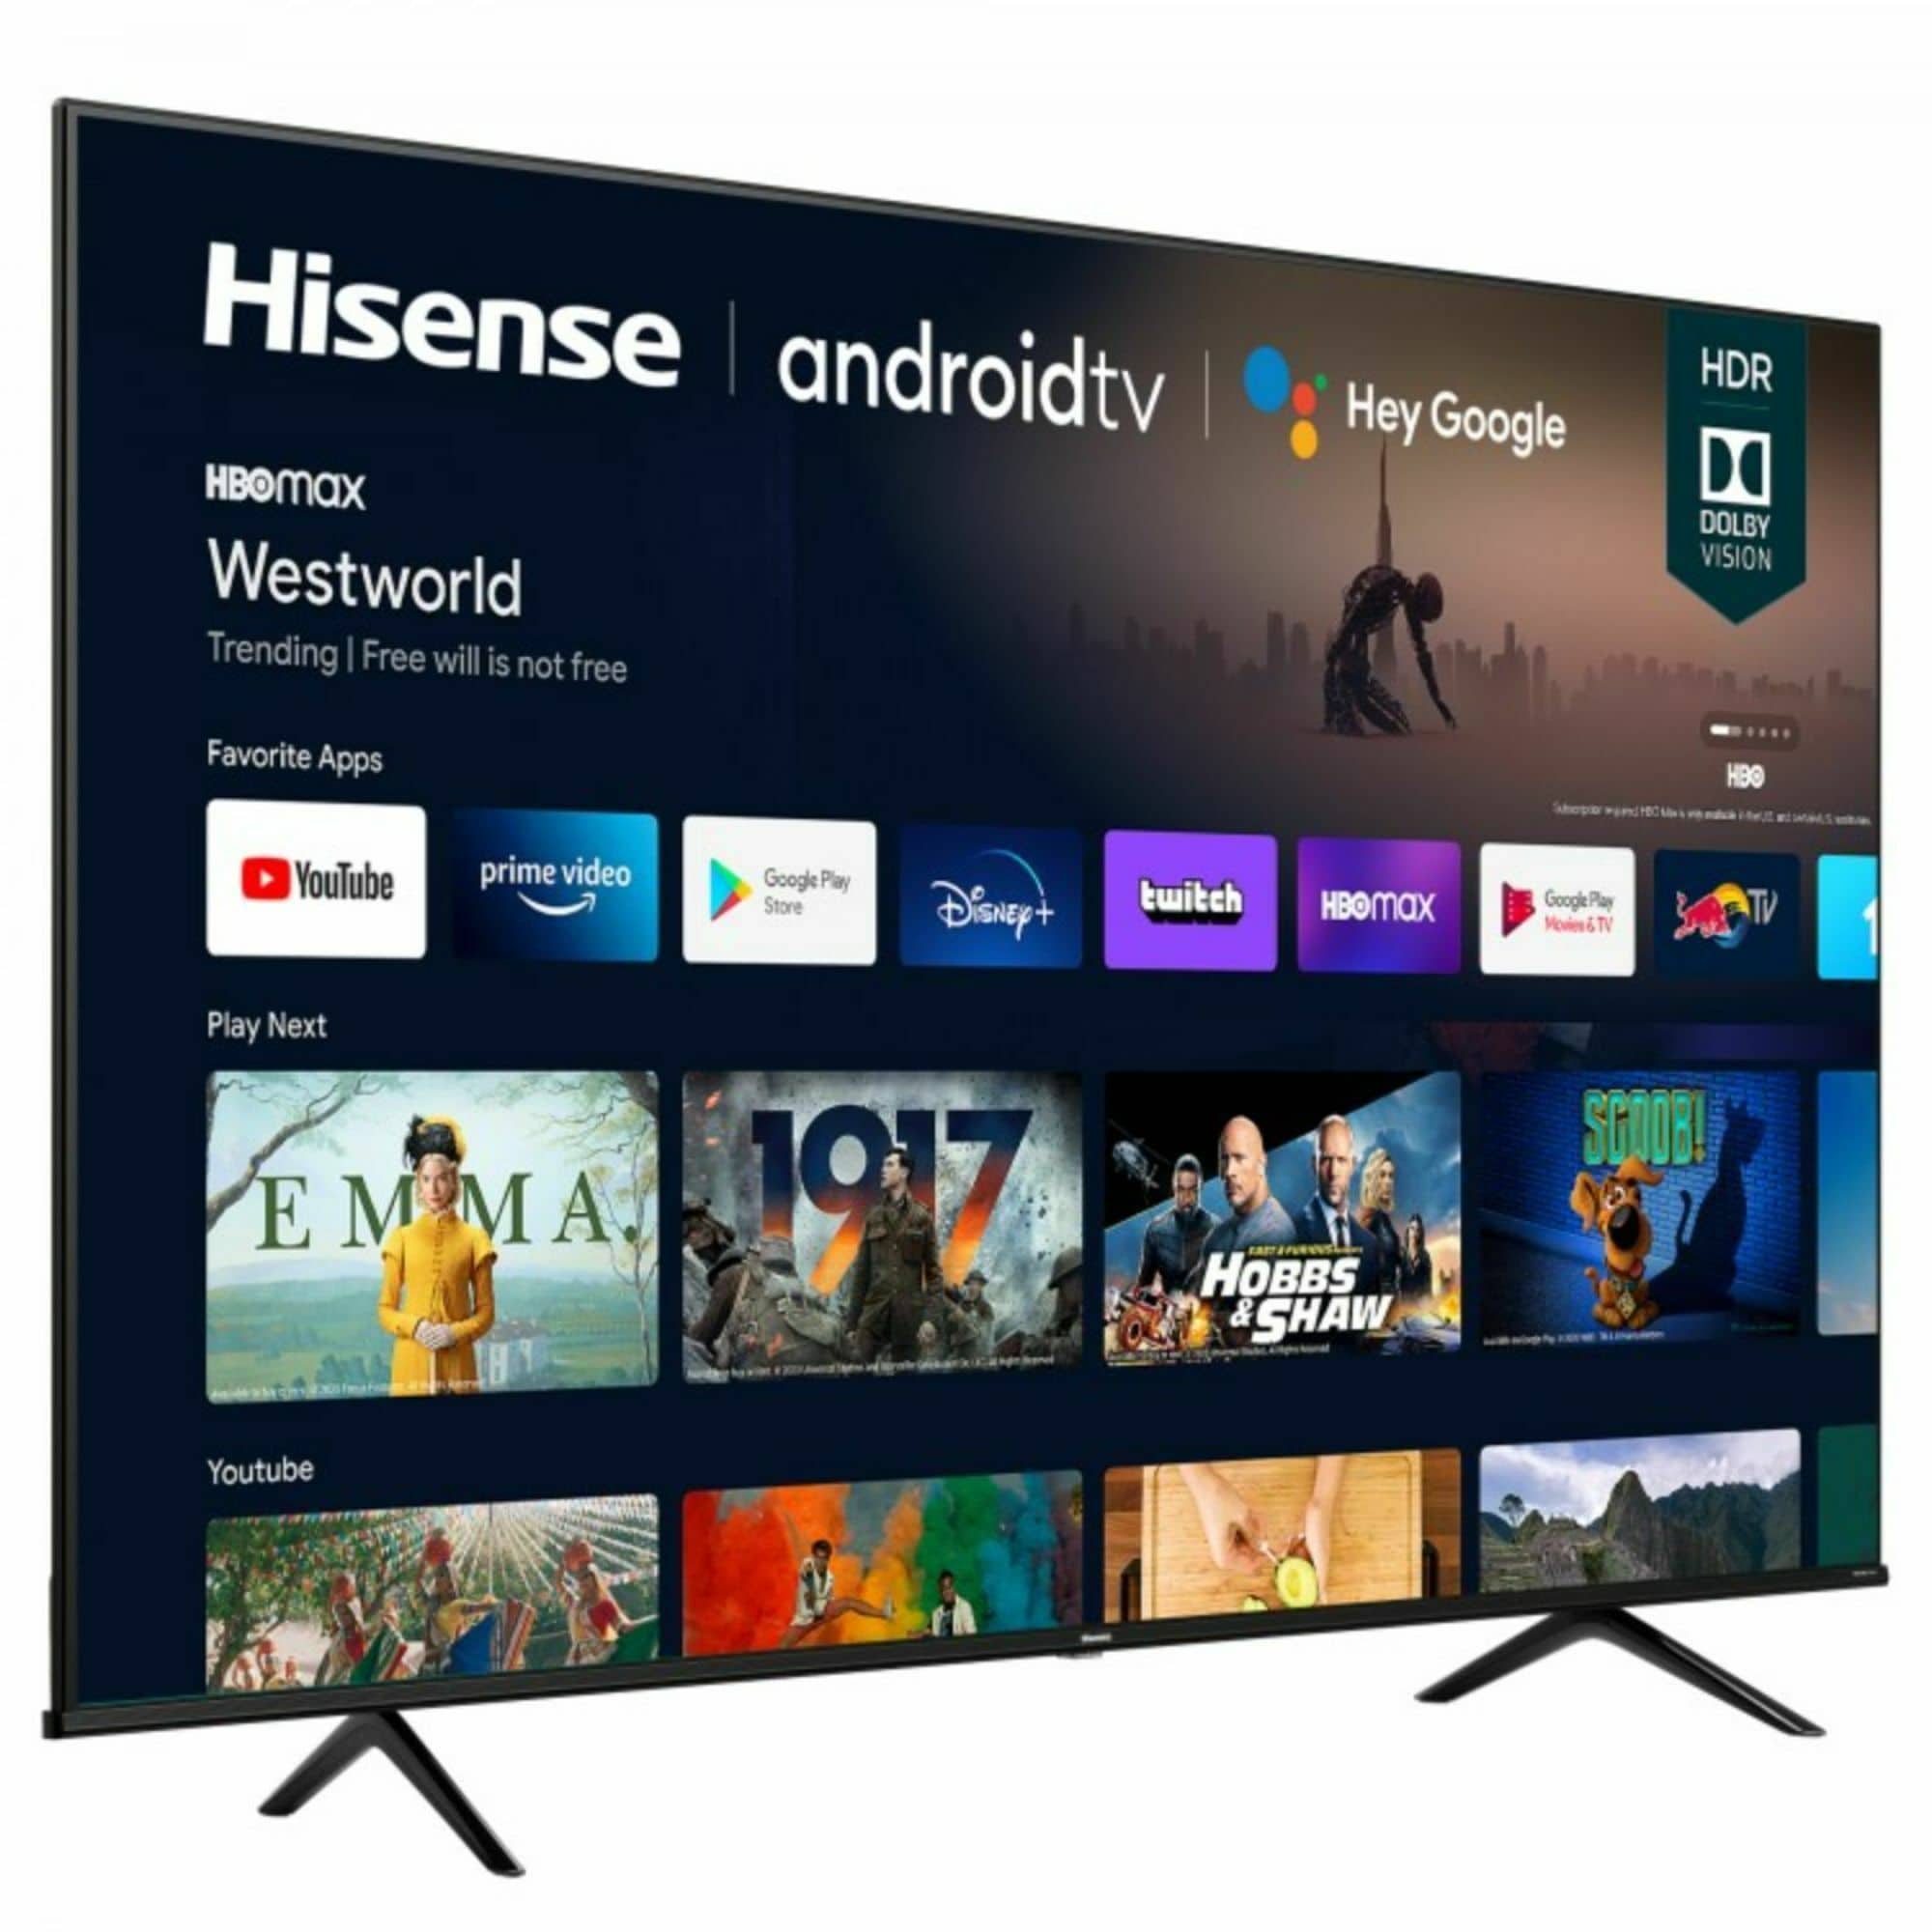 Hisense 43A63H Televisor Smart TV 43 Direct LED UHD 4K HDR